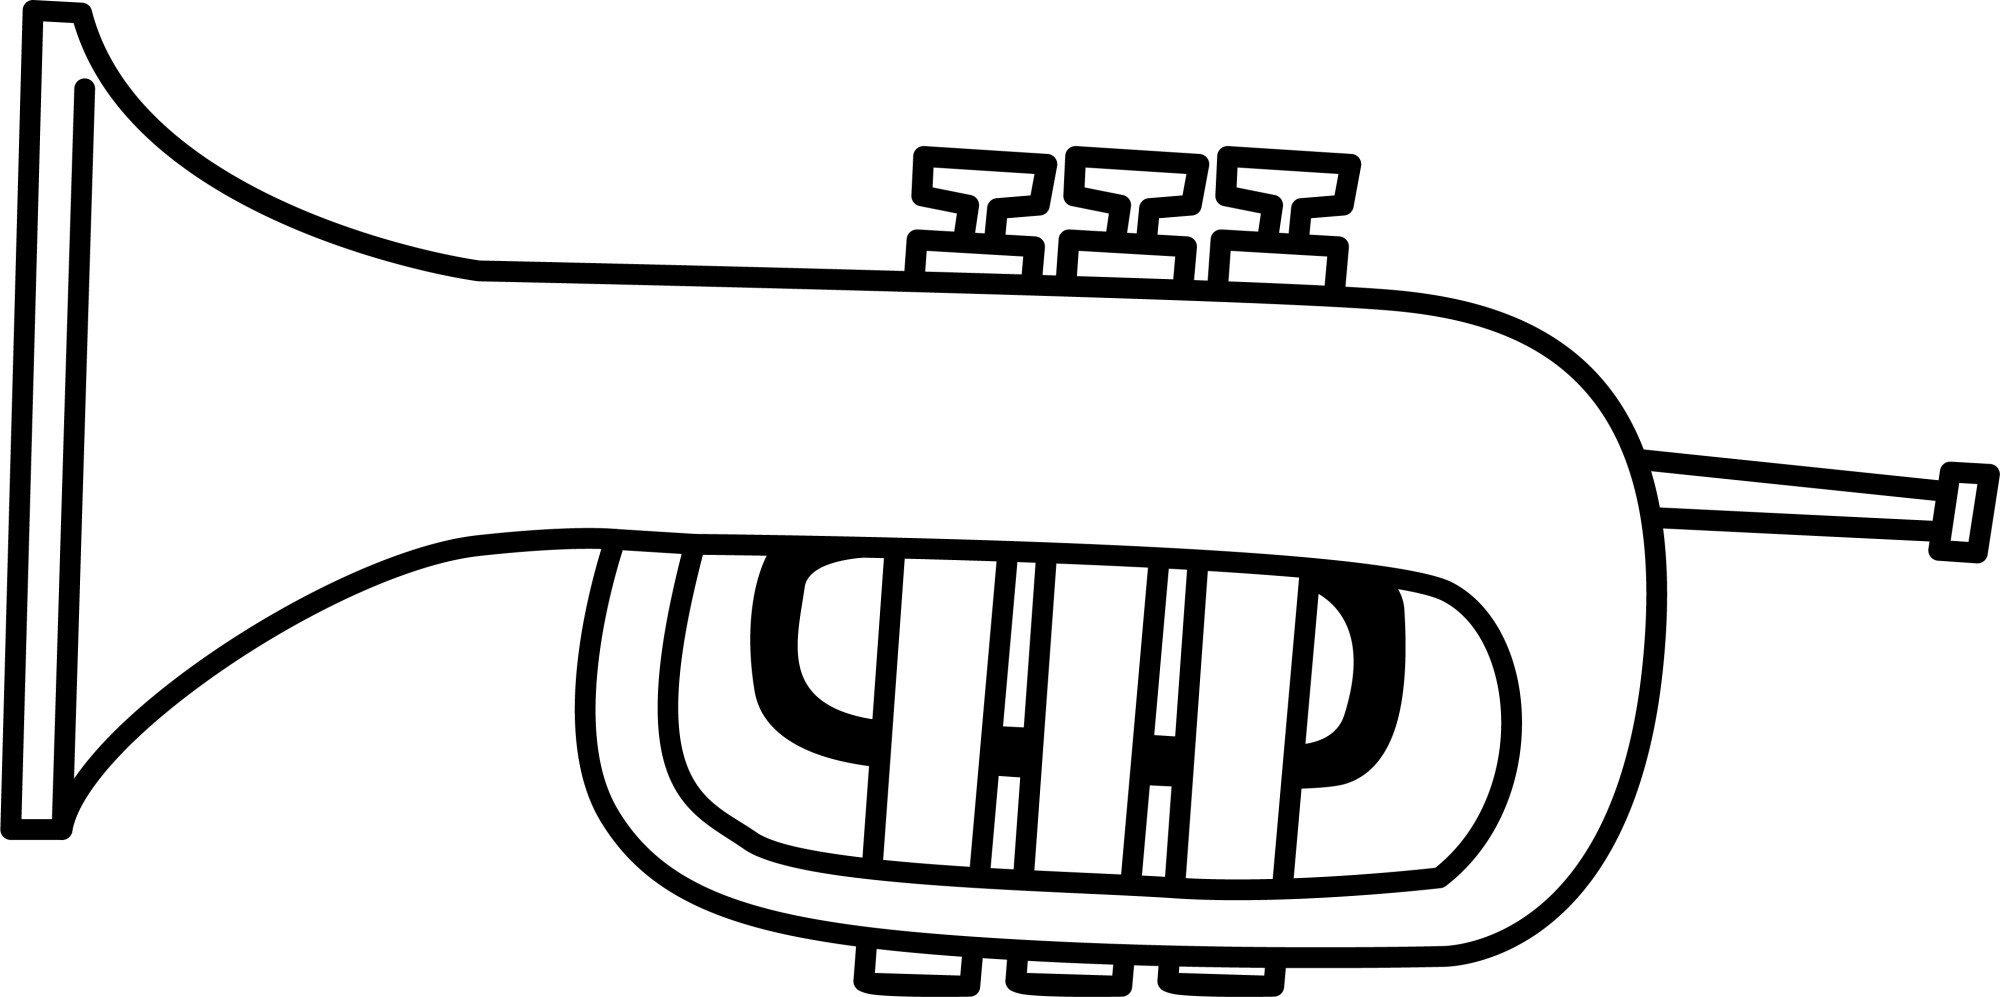 Раскраска для детей: игрушка музыкальный инструмент труба